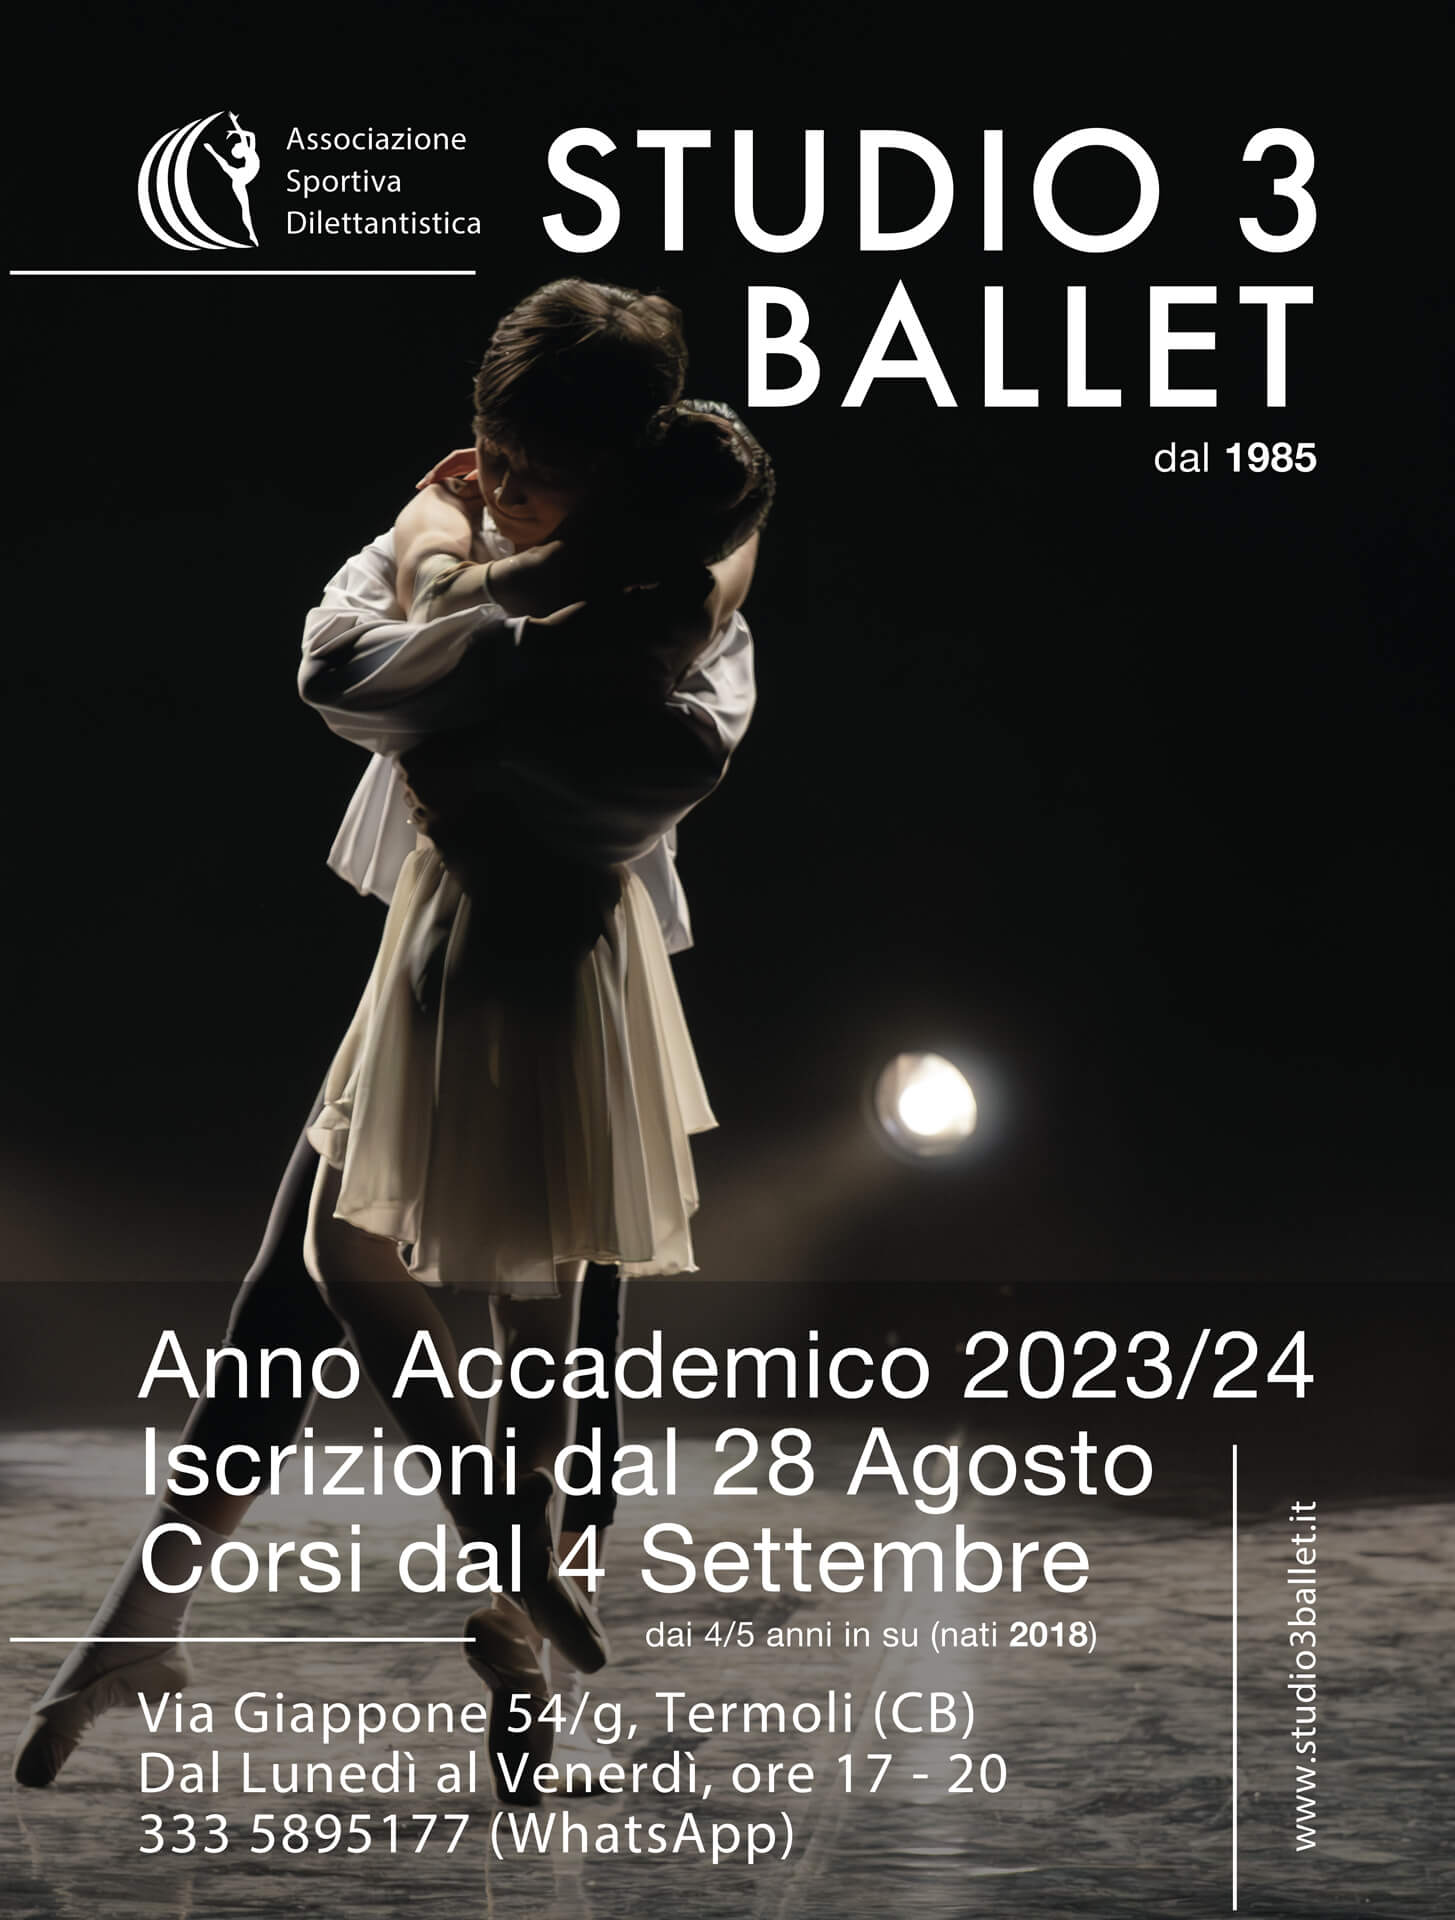 40 Anni di Passione, Talenti e Crescita nella Danza: La Storia di Successo dello “Studio 3 Ballet” continua nell’Anno Accademico 2023/24